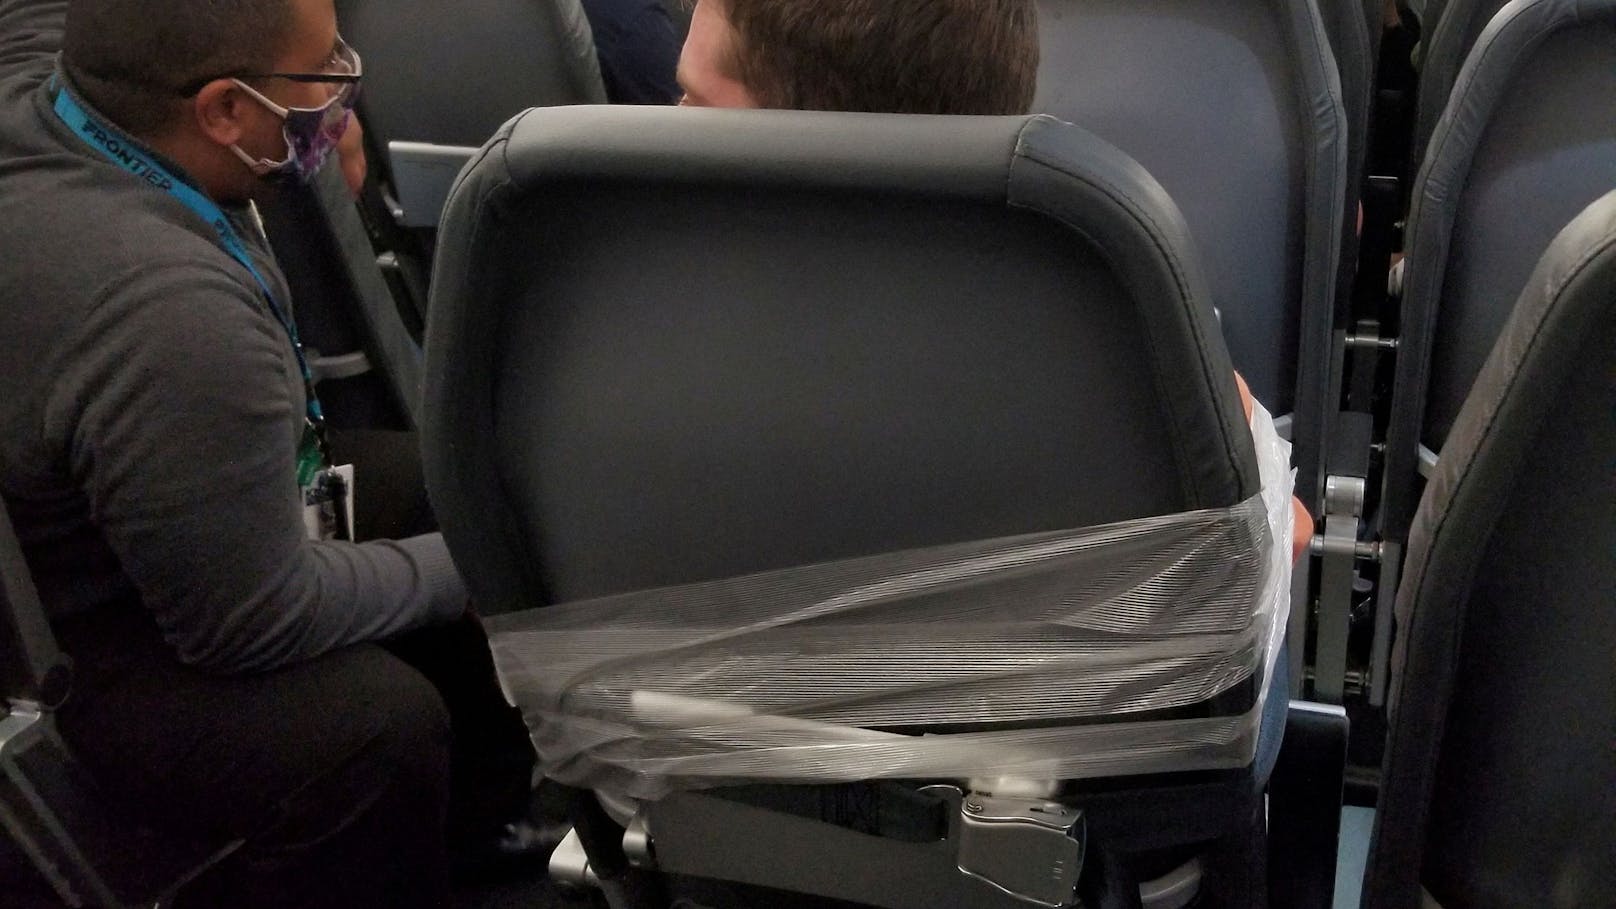 Ende Juli wurde ein <a href="https://www.heute.at/s/fluggast-sieht-rot-wird-mit-klebeband-an-sitz-gebunden-100156151">Passagier </a>auf einem Flug der "Frontier Airlines" von Philadelphia nach Miami mit Klebeband an einem Sitz fixiert.